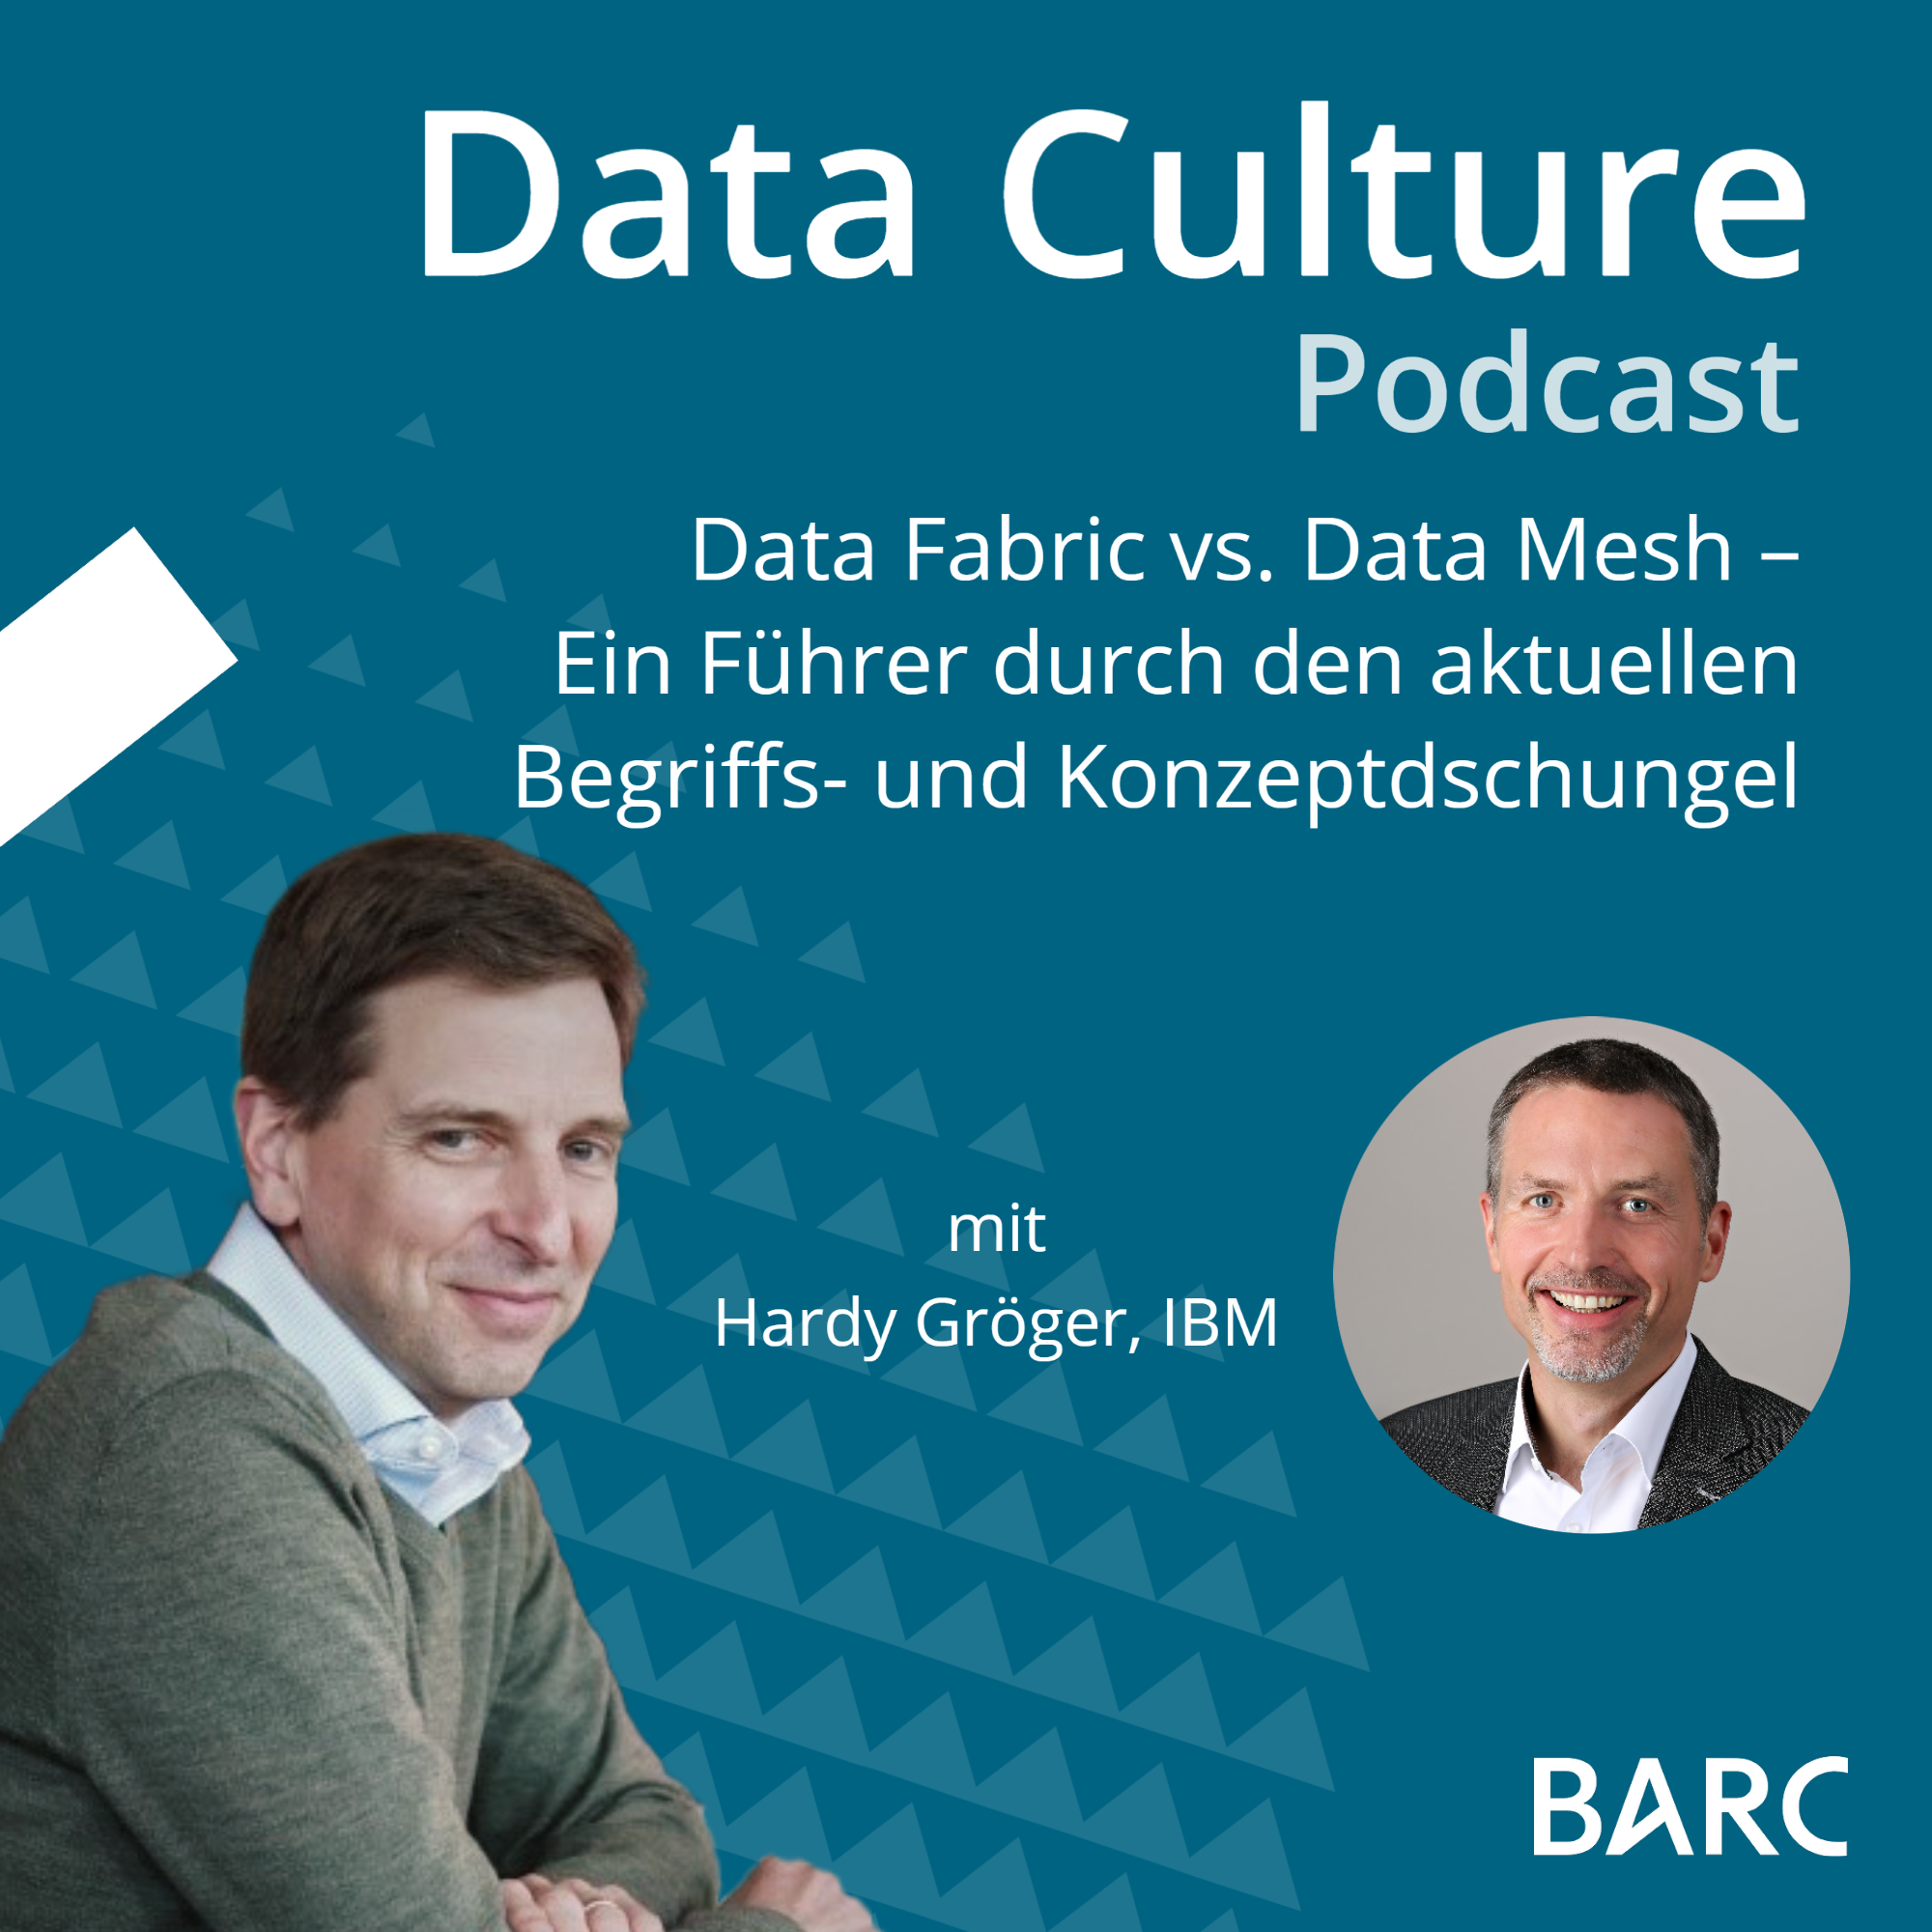 Data Fabric vs. Data Mesh – Ein Führer durch den aktuellen Begriffs- und Konzeptdschungel – mit Hardy Gröger, IBM